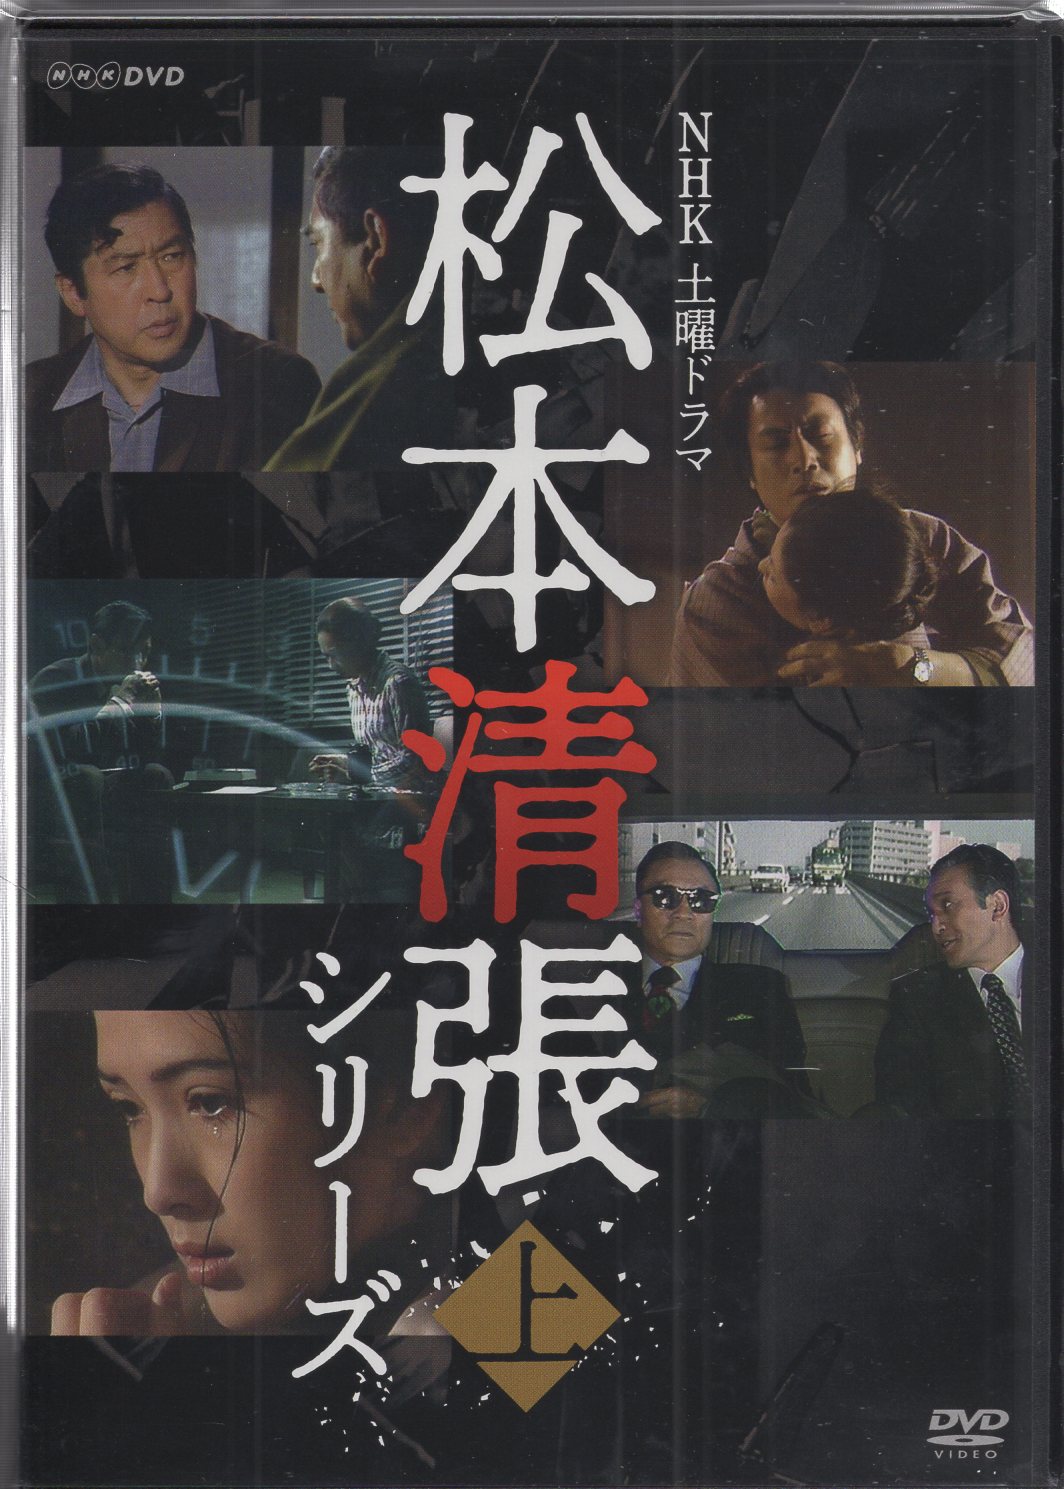 NHK土曜ドラマ 松本清張シリーズ 上巻 DVD 5枚組 - 映像と音の友社 